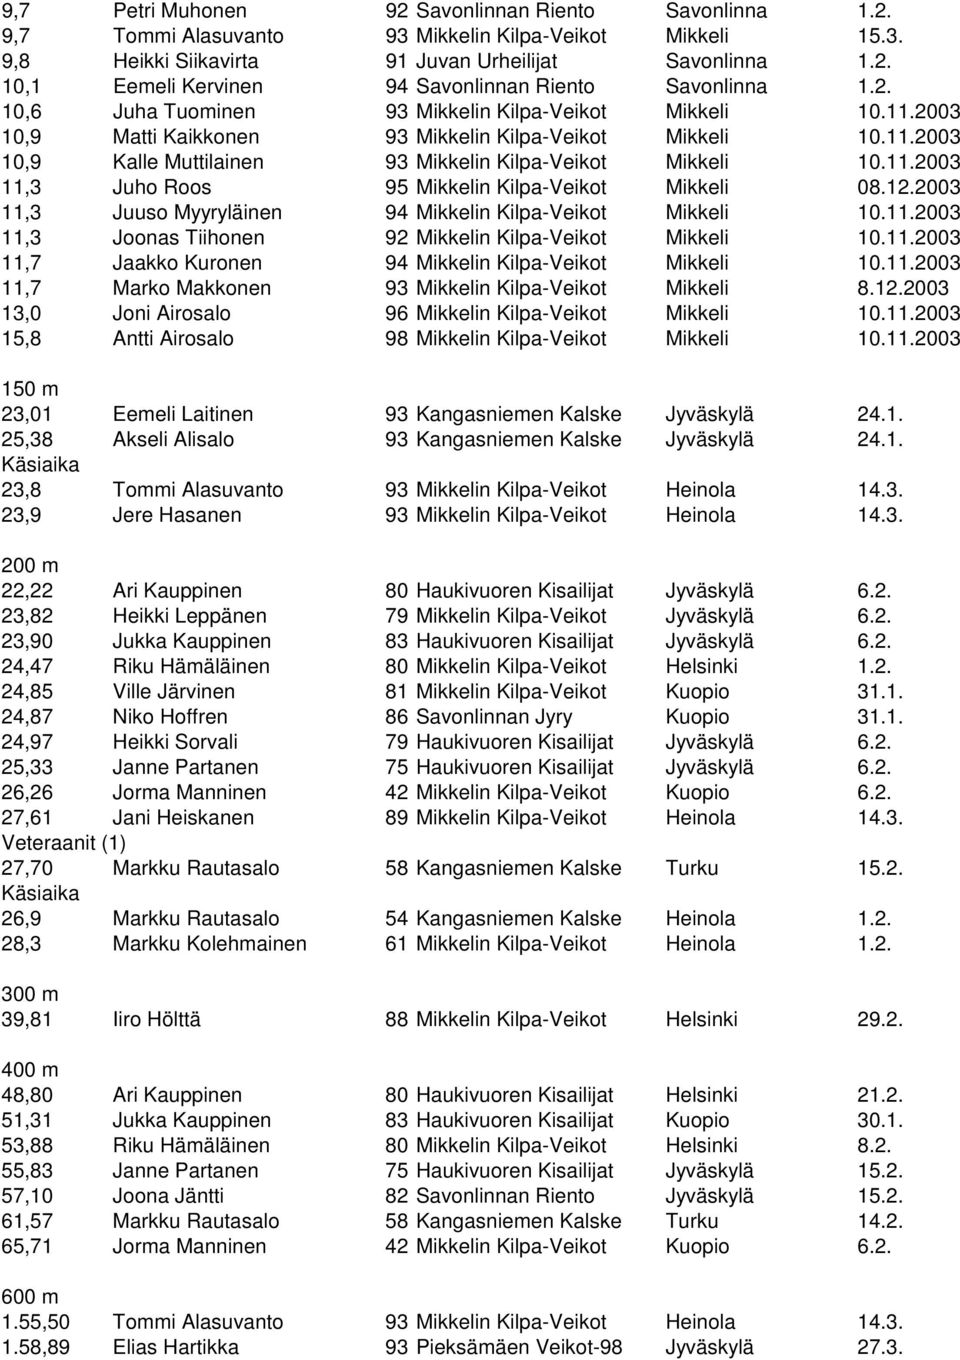 12.2003 11,3 Juuso Myyryläinen 94 Mikkelin Kilpa-Veikot Mikkeli 10.11.2003 11,3 Joonas Tiihonen 92 Mikkelin Kilpa-Veikot Mikkeli 10.11.2003 11,7 Jaakko Kuronen 94 Mikkelin Kilpa-Veikot Mikkeli 10.11.2003 11,7 Marko Makkonen 93 Mikkelin Kilpa-Veikot Mikkeli 8.